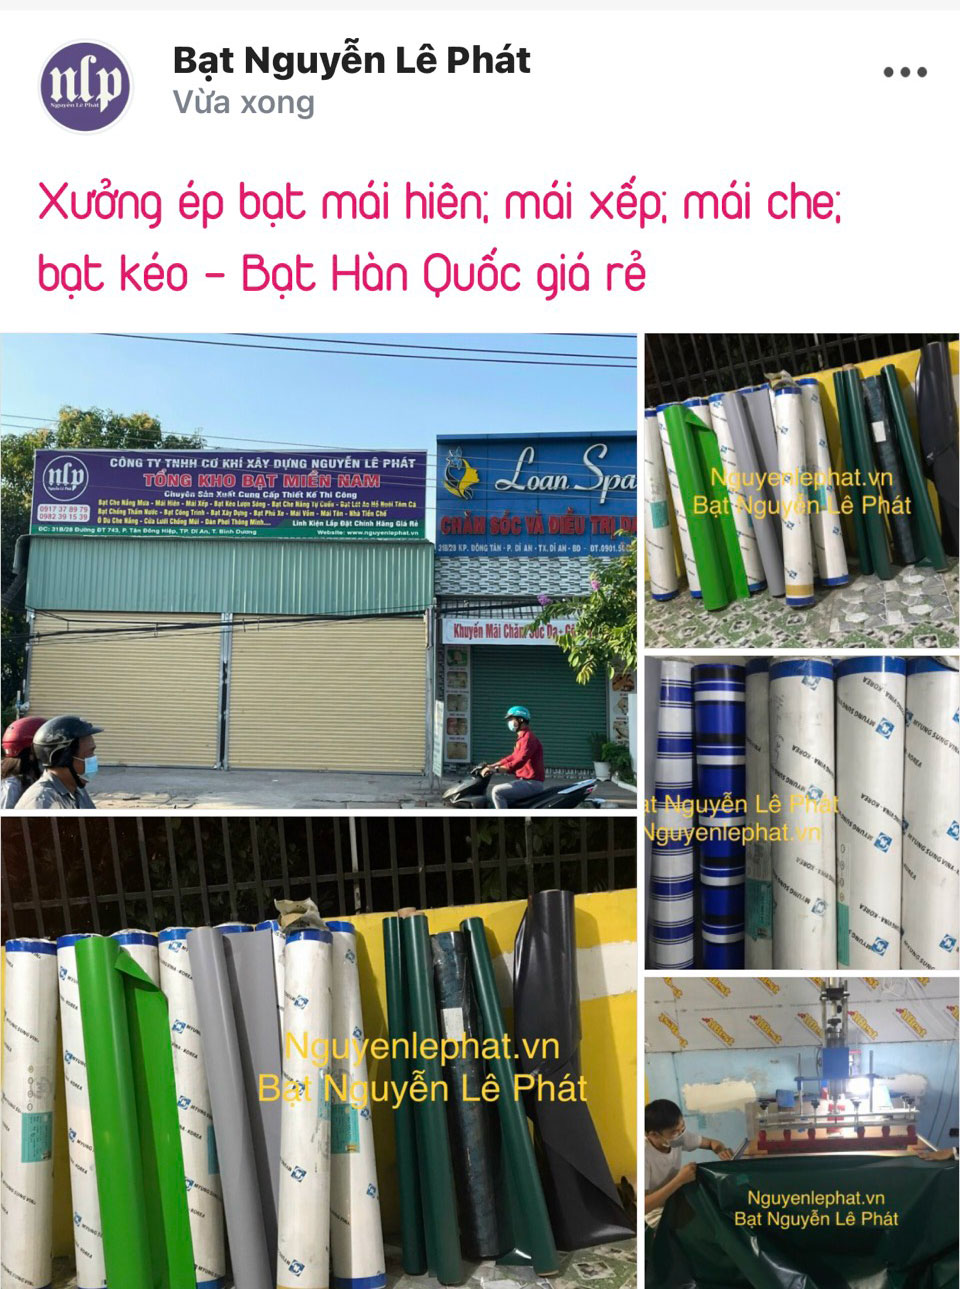 Bạt Mái Xếp Di Động Tại Đà Nẵng giá rẻ